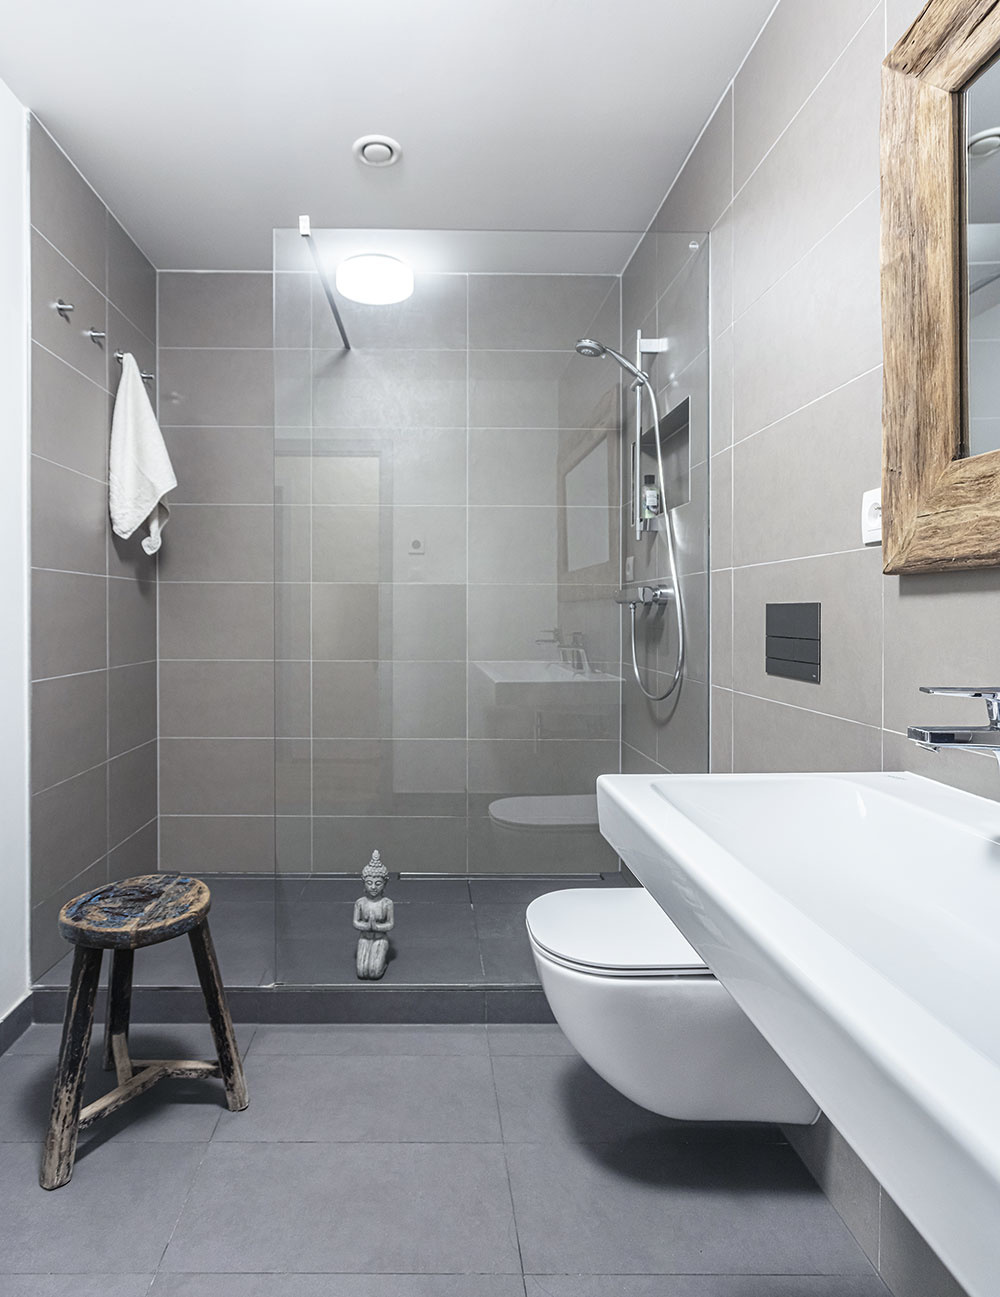 Kúpeľňa je obložená sivým obkladom a so zvyškom bytu ju štýlovo spájajú drevené prvky, ako sú rám zrkadla nad umývadlom či praktická stolička.